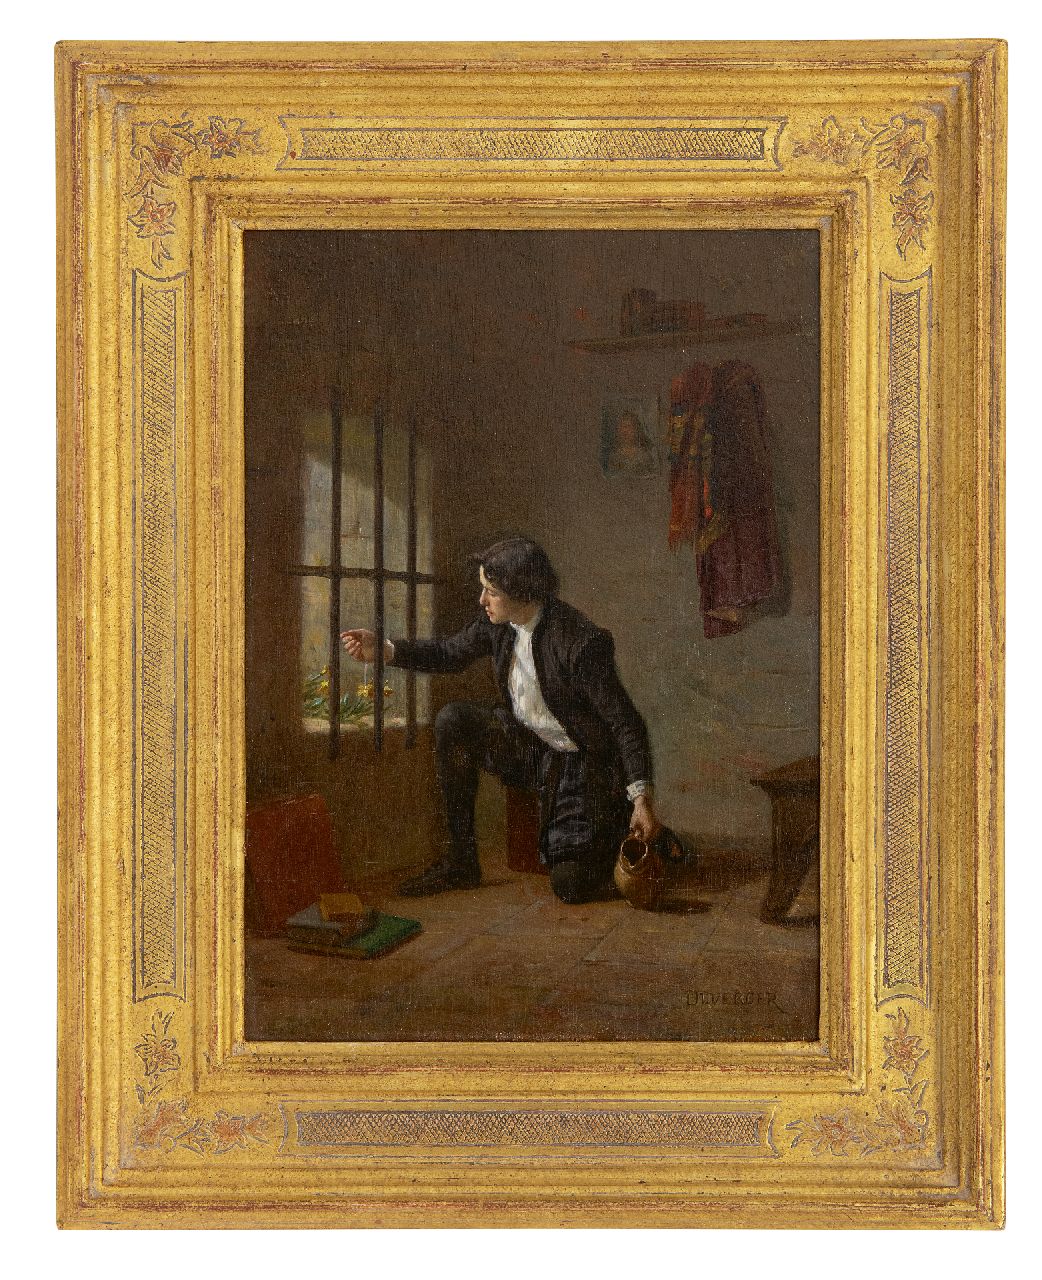 Duverger T.E.  | Théophile Emmanuel Duverger, The tender prisoner, oil on panel 23.5 x 16.2 cm, signed l.r.